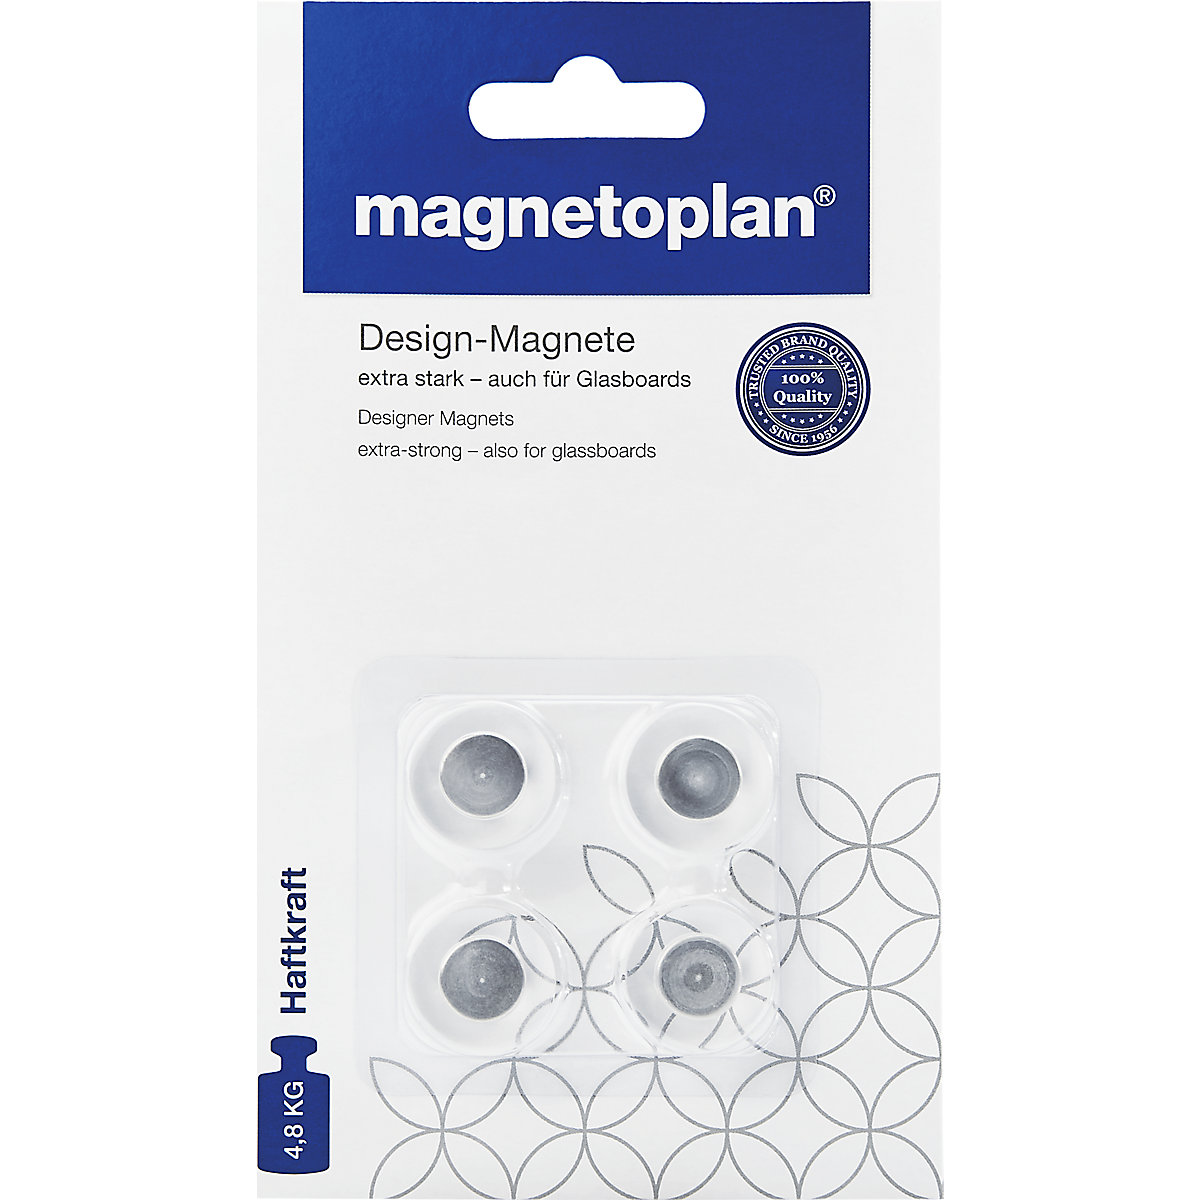 Dizajnerski magnet – magnetoplan